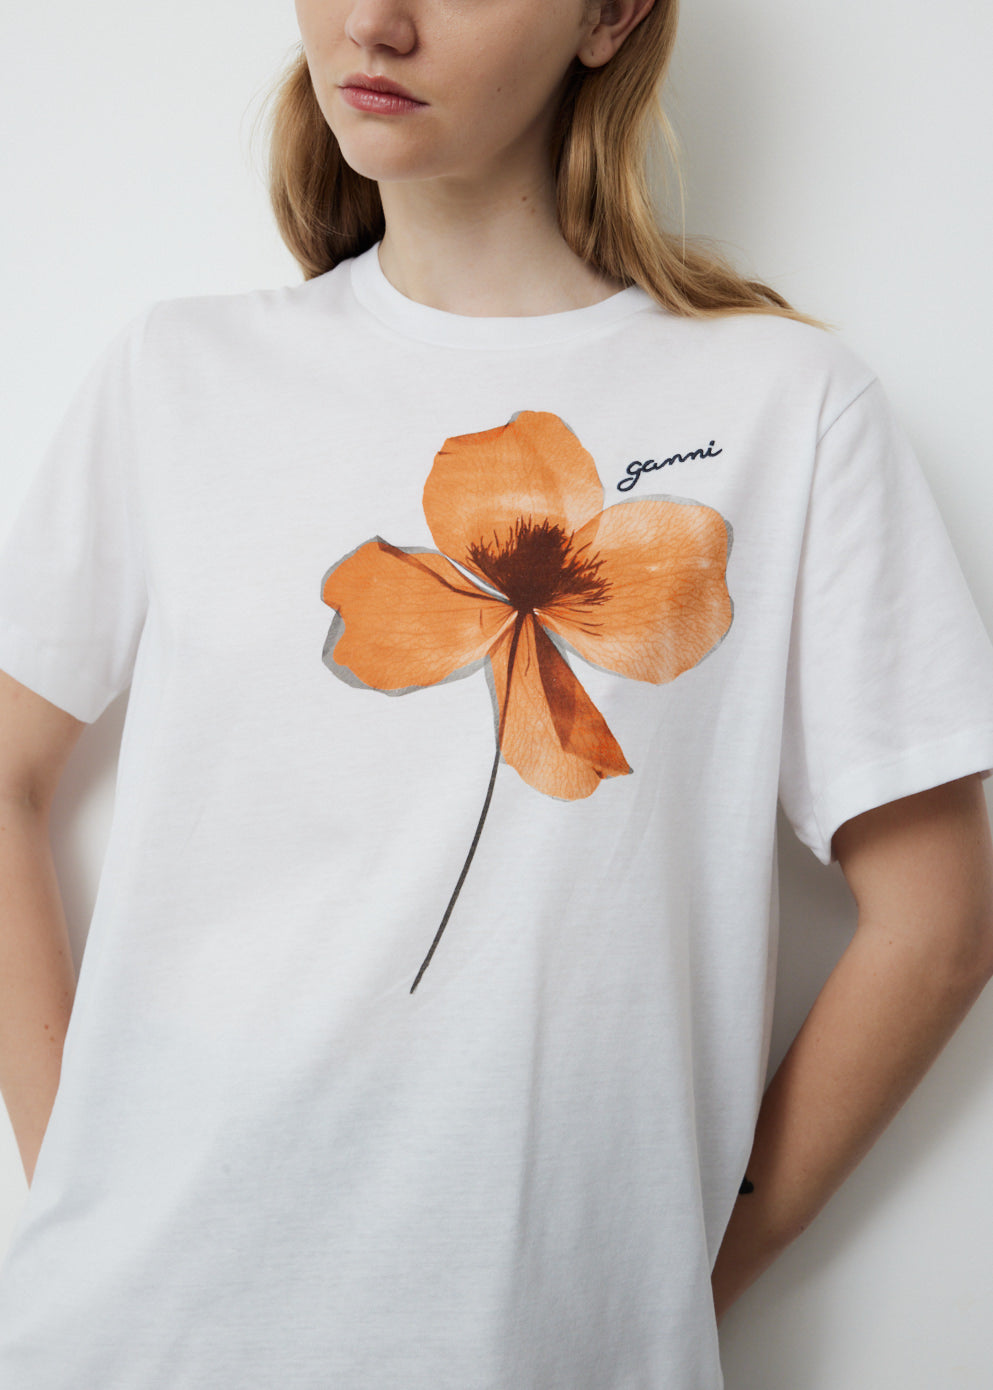 Relaxed Flower organic cotton T-shirt, GANNI